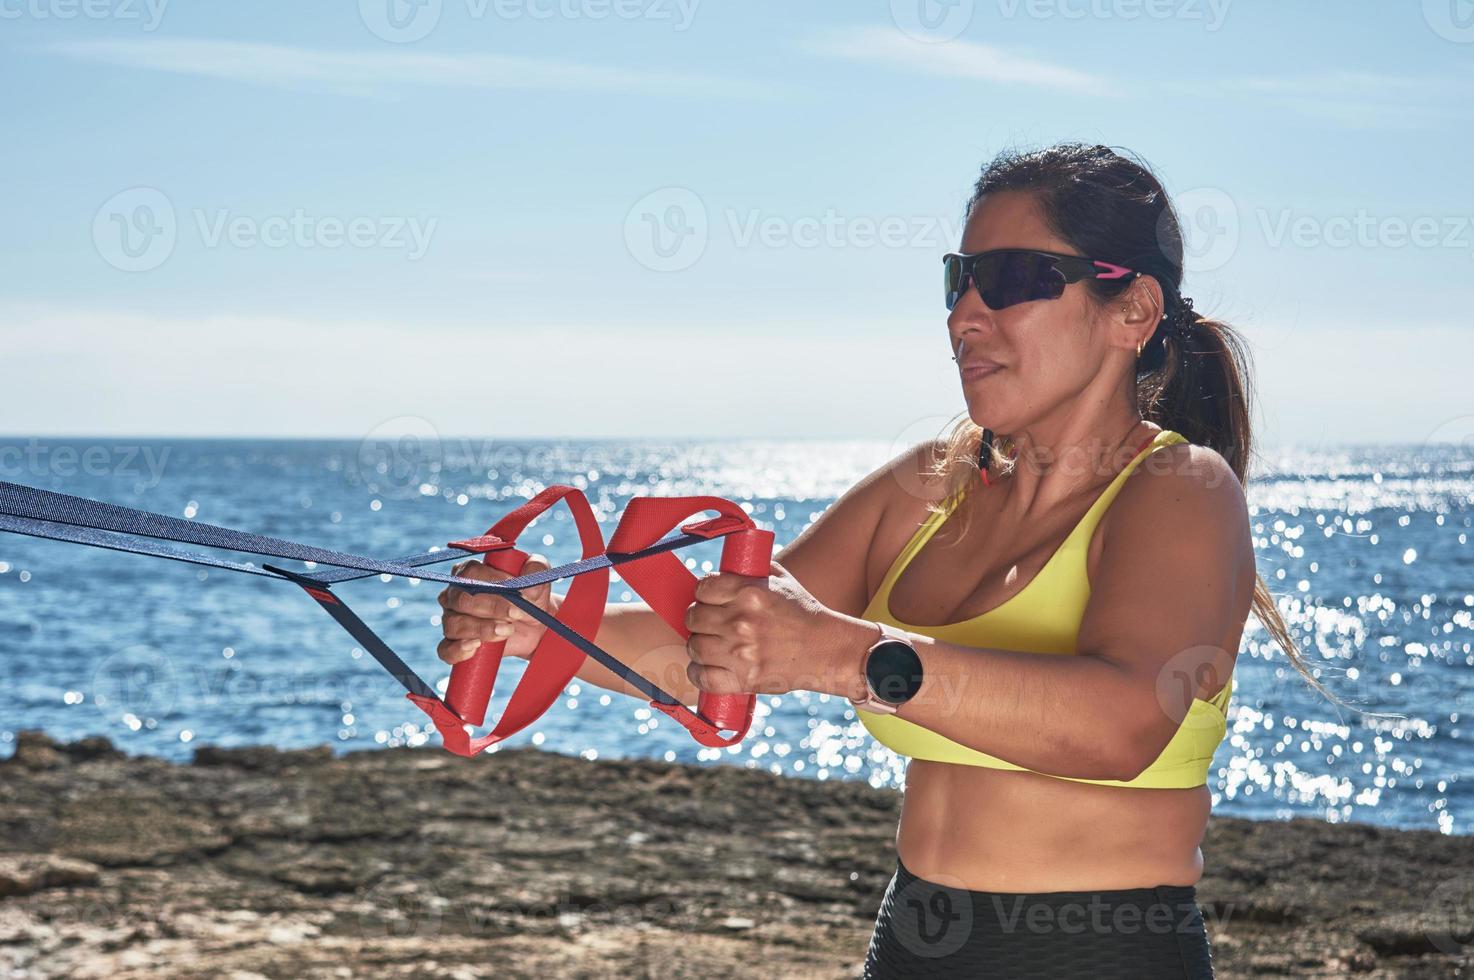 mujer latina, de mediana edad, mirando la aplicación, reloj inteligente, descansando después de la sesión de gimnasia, vistiendo top amarillo, polainas negras, pesas, quemando calorías, manteniéndose en forma, al aire libre junto al mar, foto